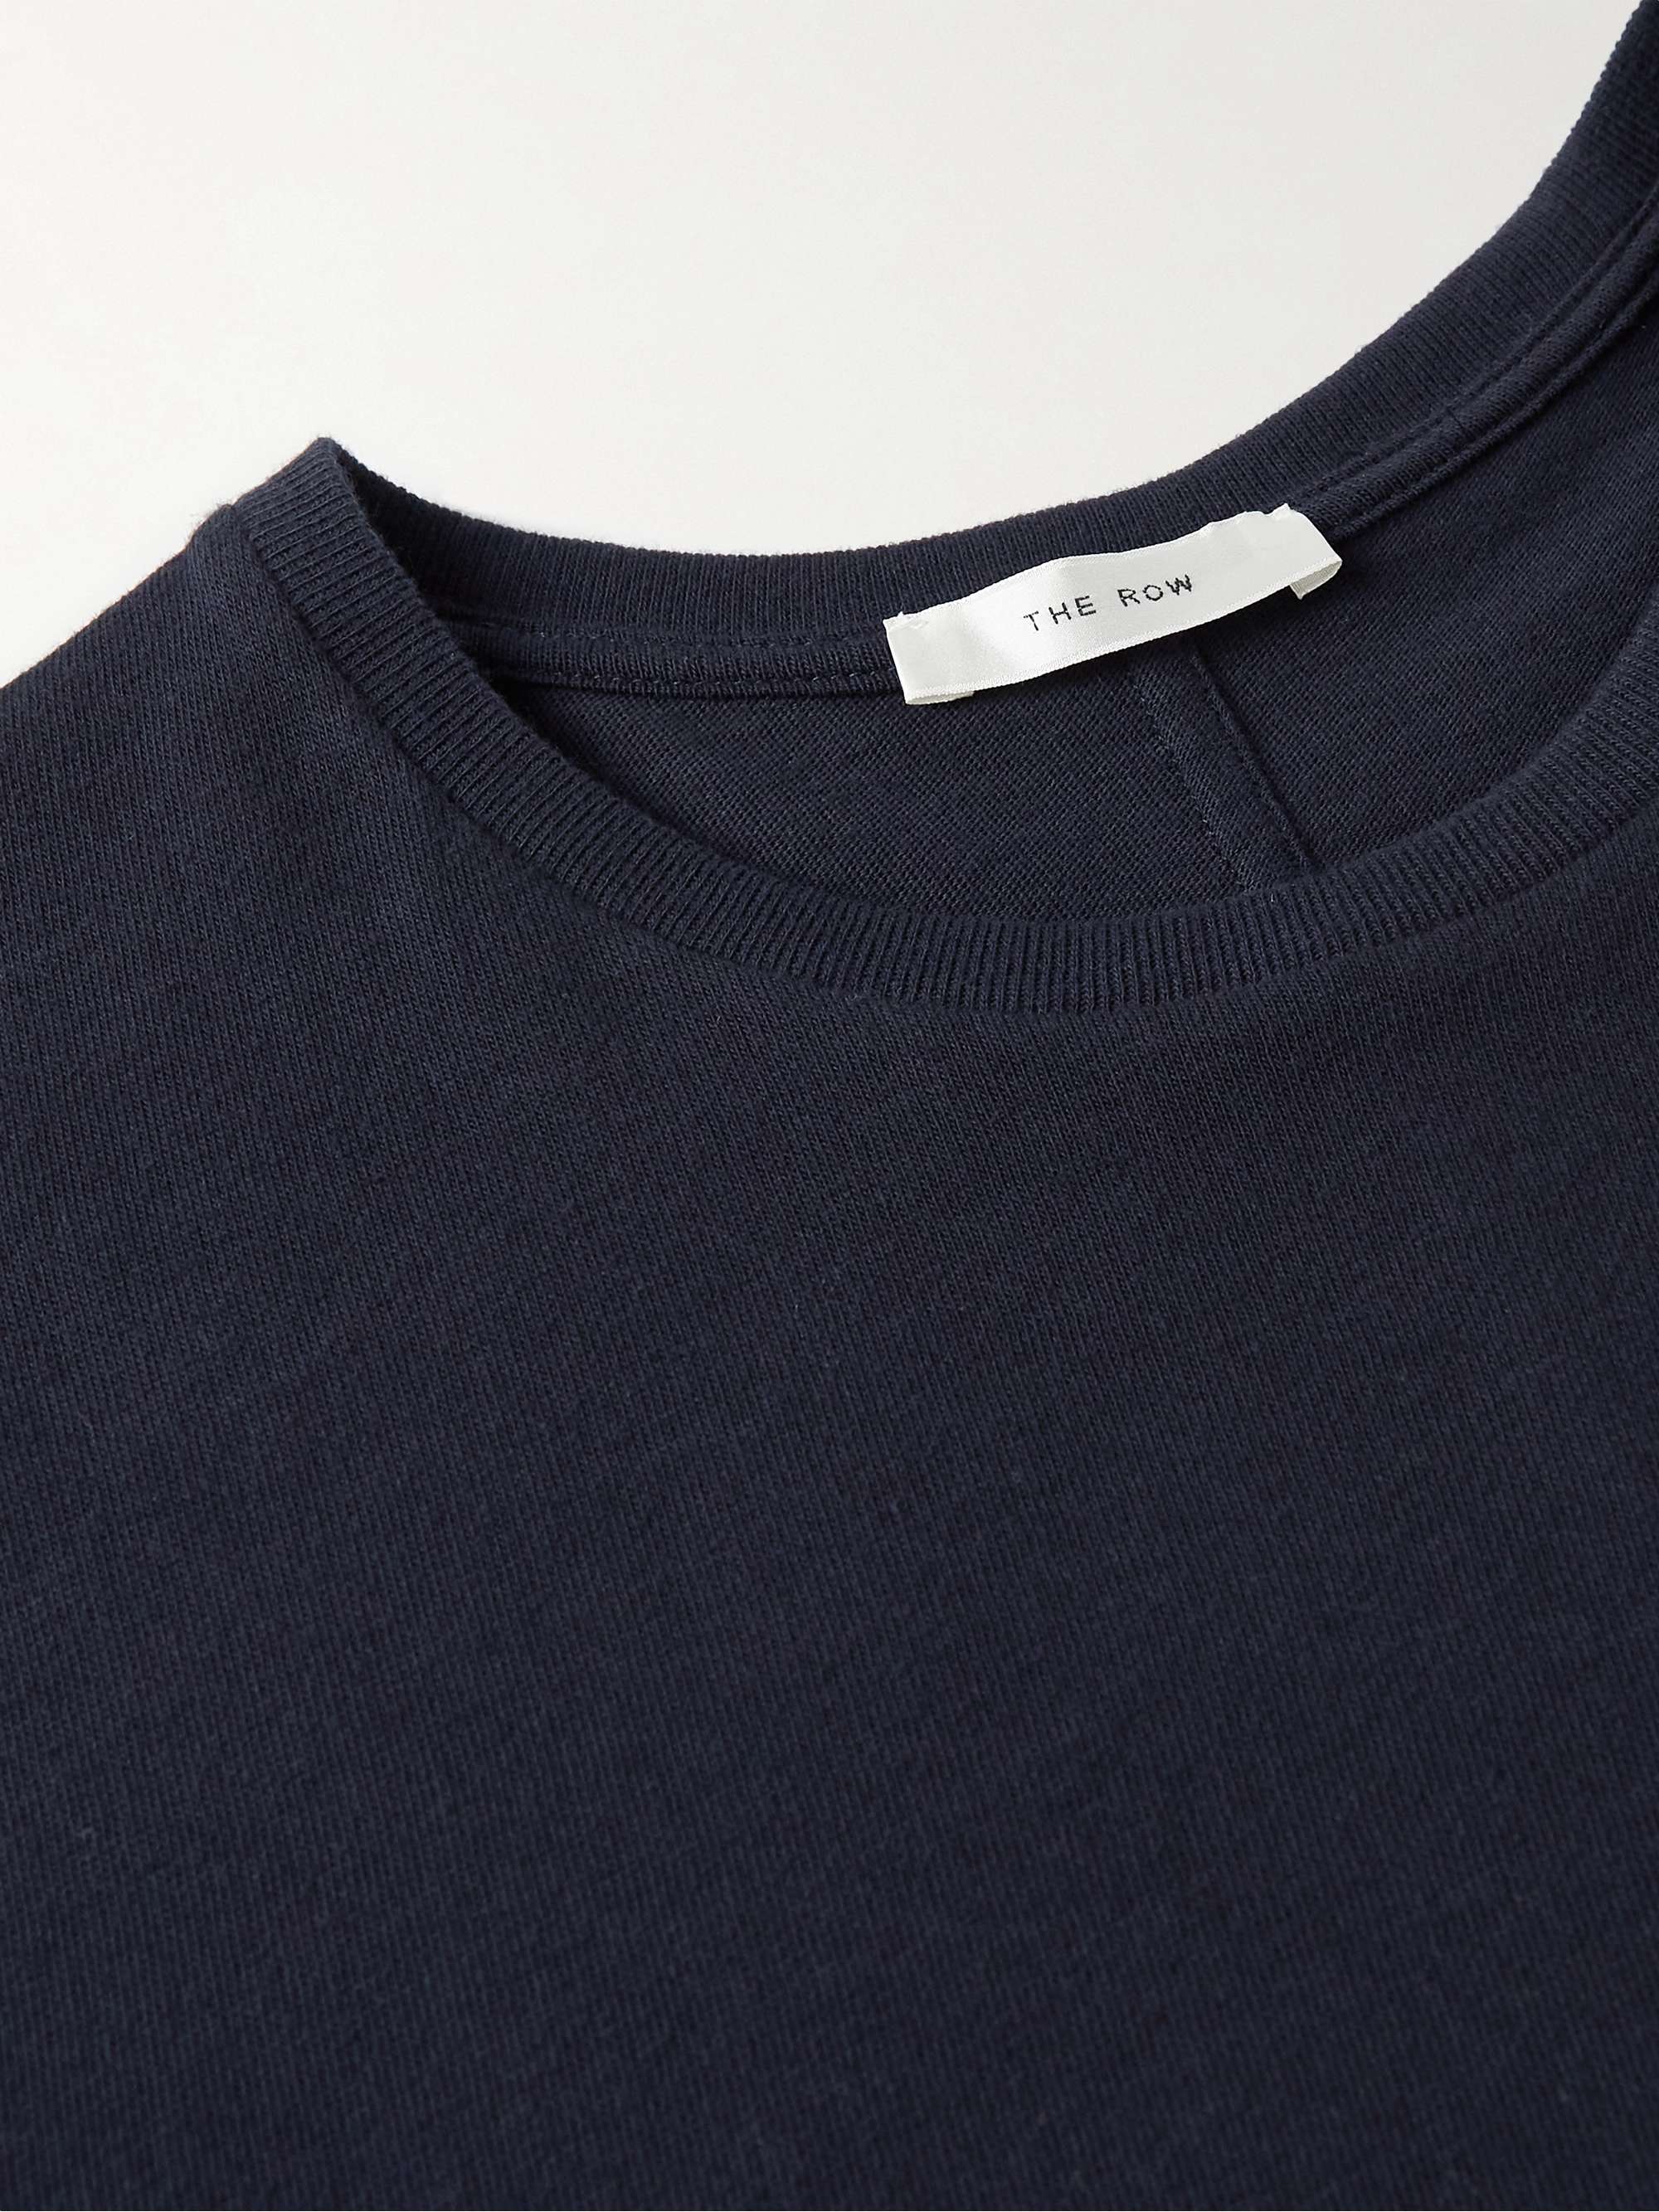 THE ROW Luke Cotton T-Shirt for Men | MR PORTER